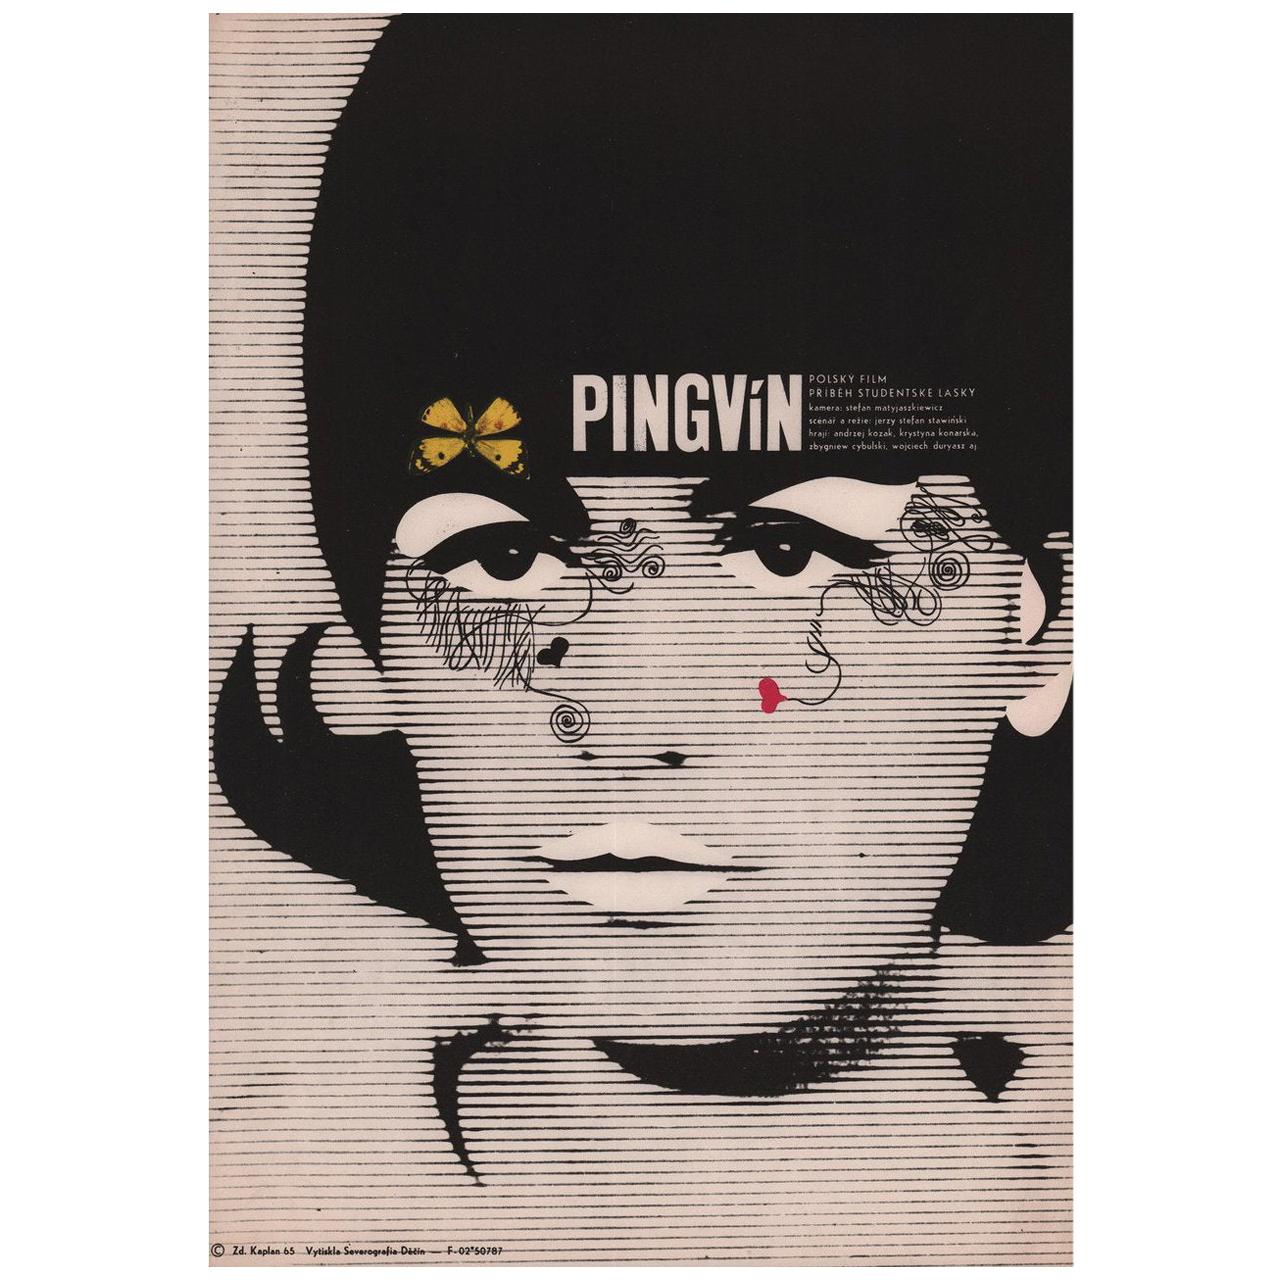 Pingwin 1965 Tschechisches A3 Filmplakat